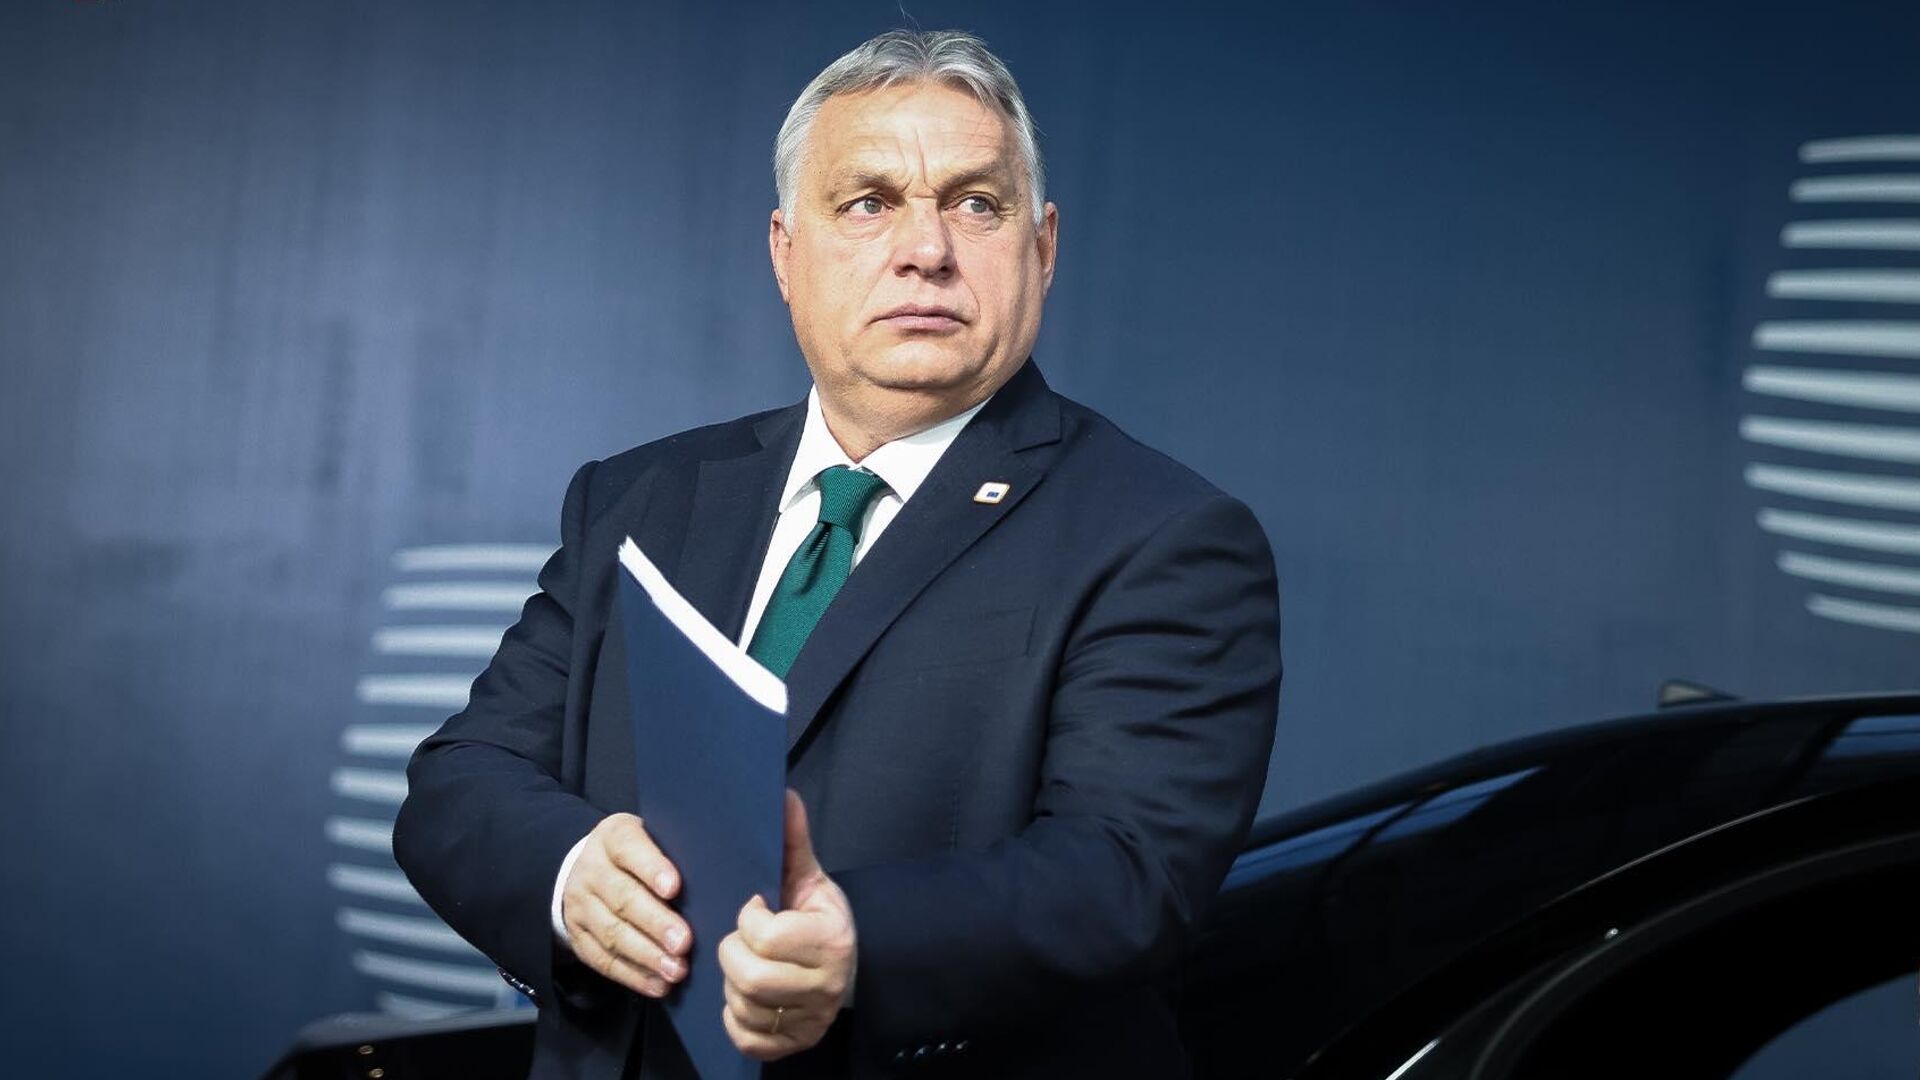 Orbán Európa élén: lehetséges forgatókönyv vagy “nedves fantáziái” a Kreml fő barátjának az EU-ban?